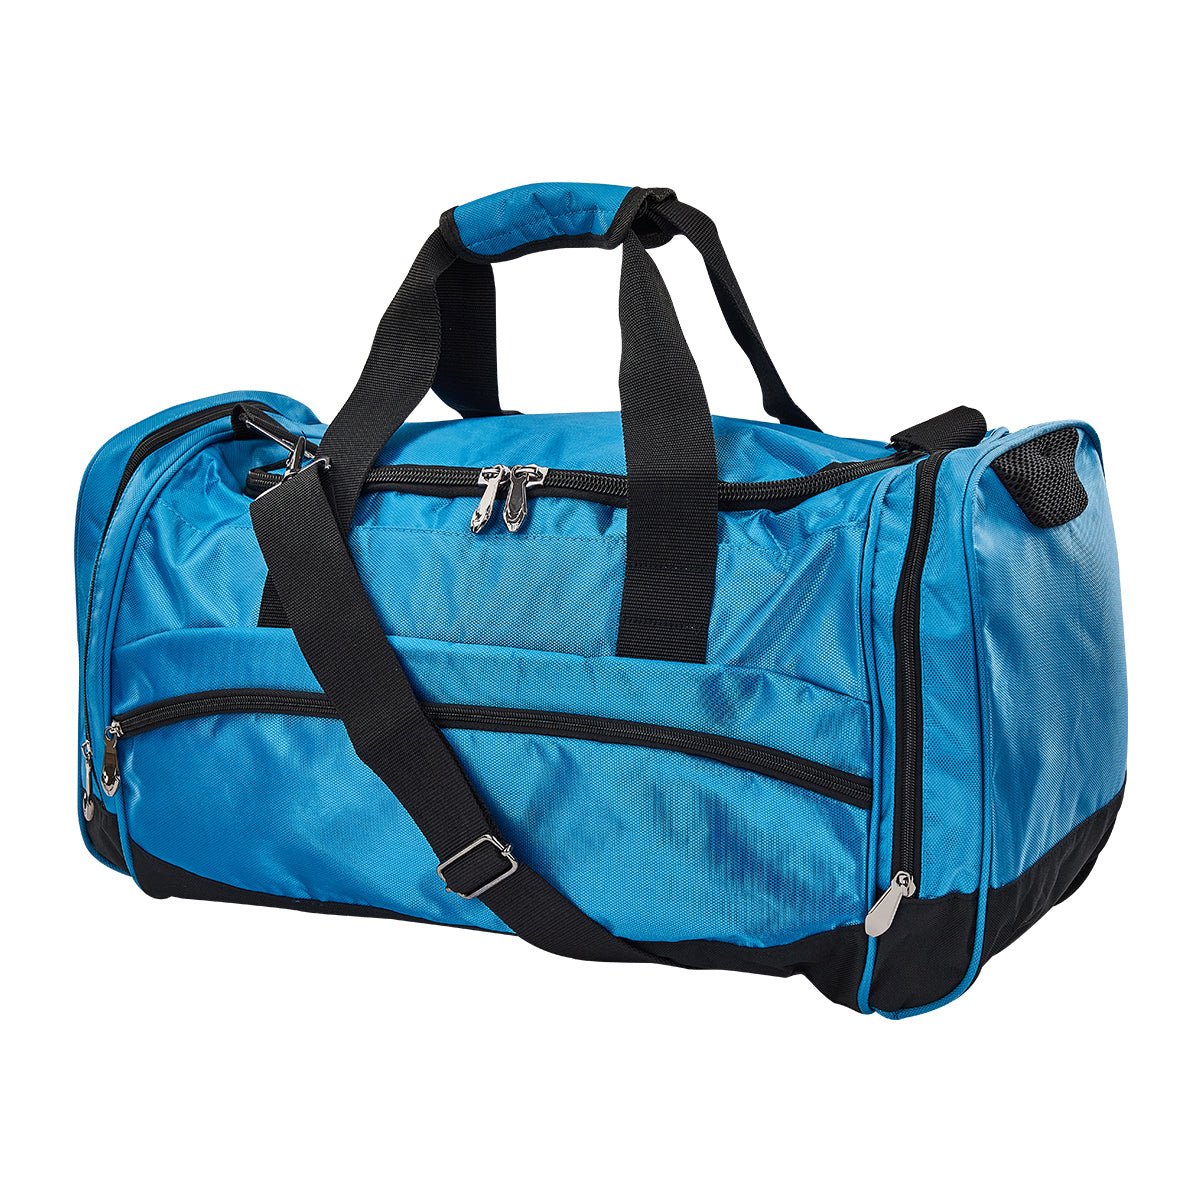 Premium Sport Bag - Medium Medium Blue